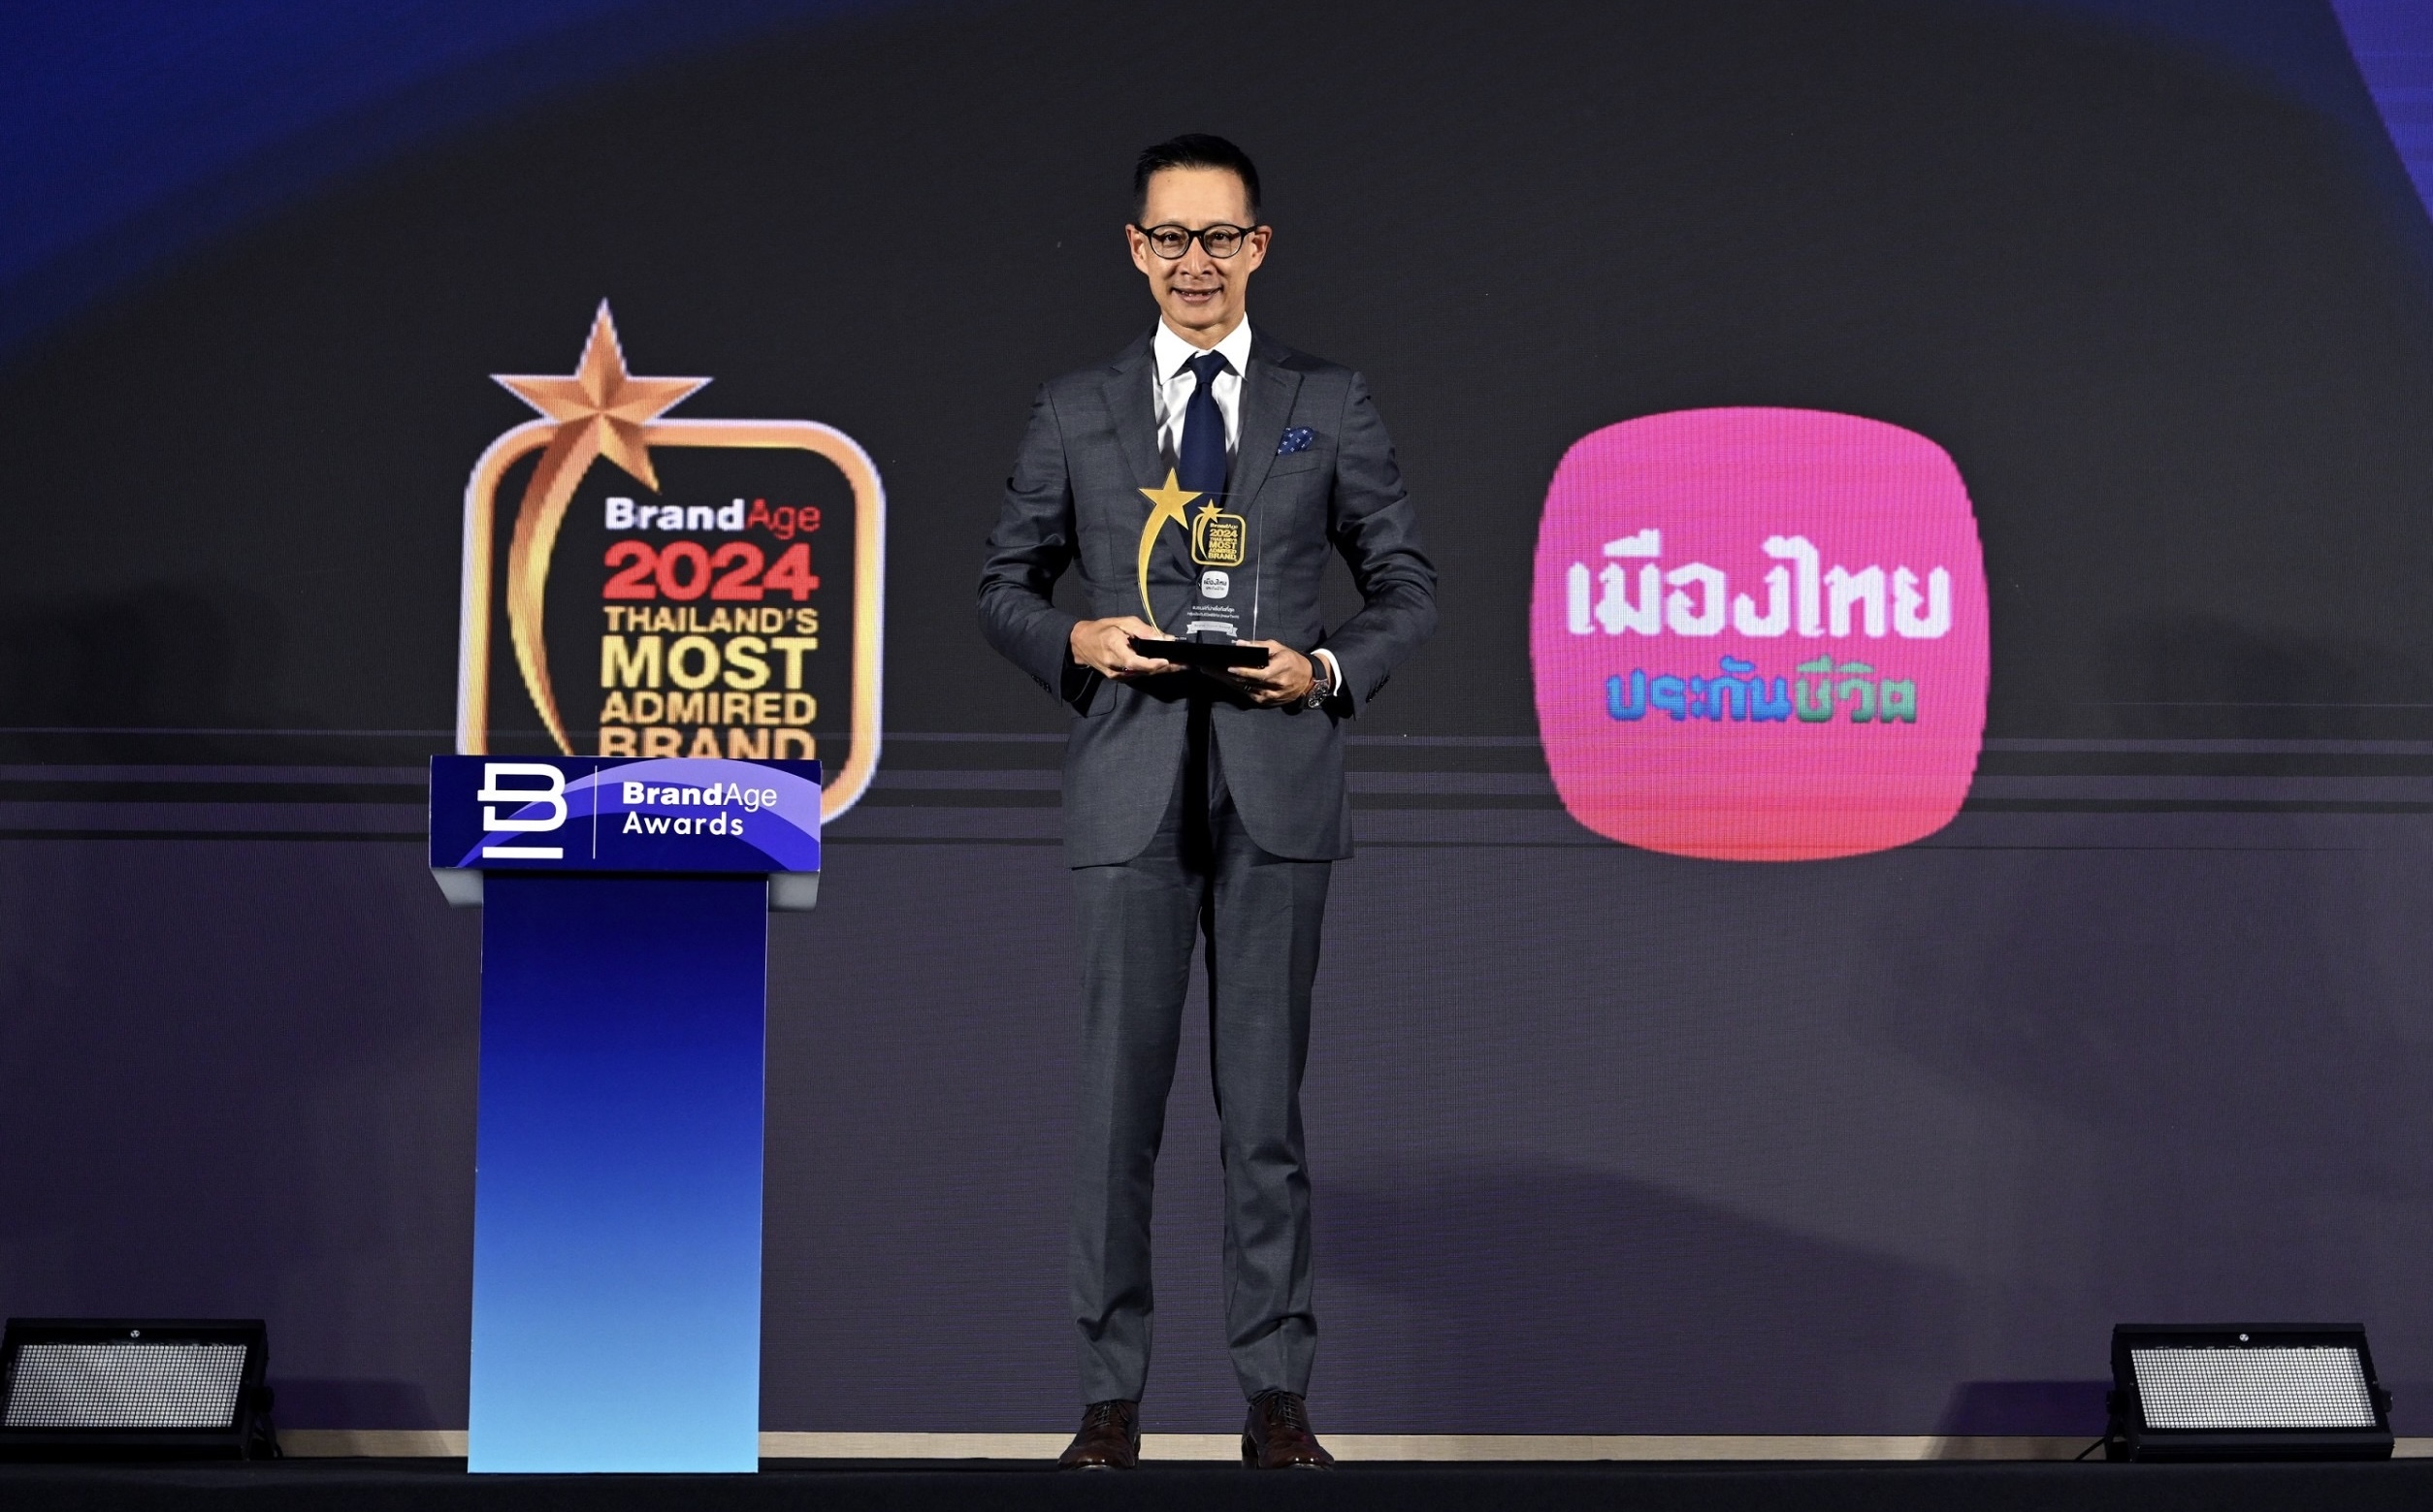 “สาระ ล่ำซำ” รับรางวัล CEO Thailand Prime Awards เป็นคนแรกของการจัดมอบรางวัลพร้อมคว้ารางวัลพิเศษ  Brand Maker Award  จากงาน 2024 Thailand’s Most Admired Brand